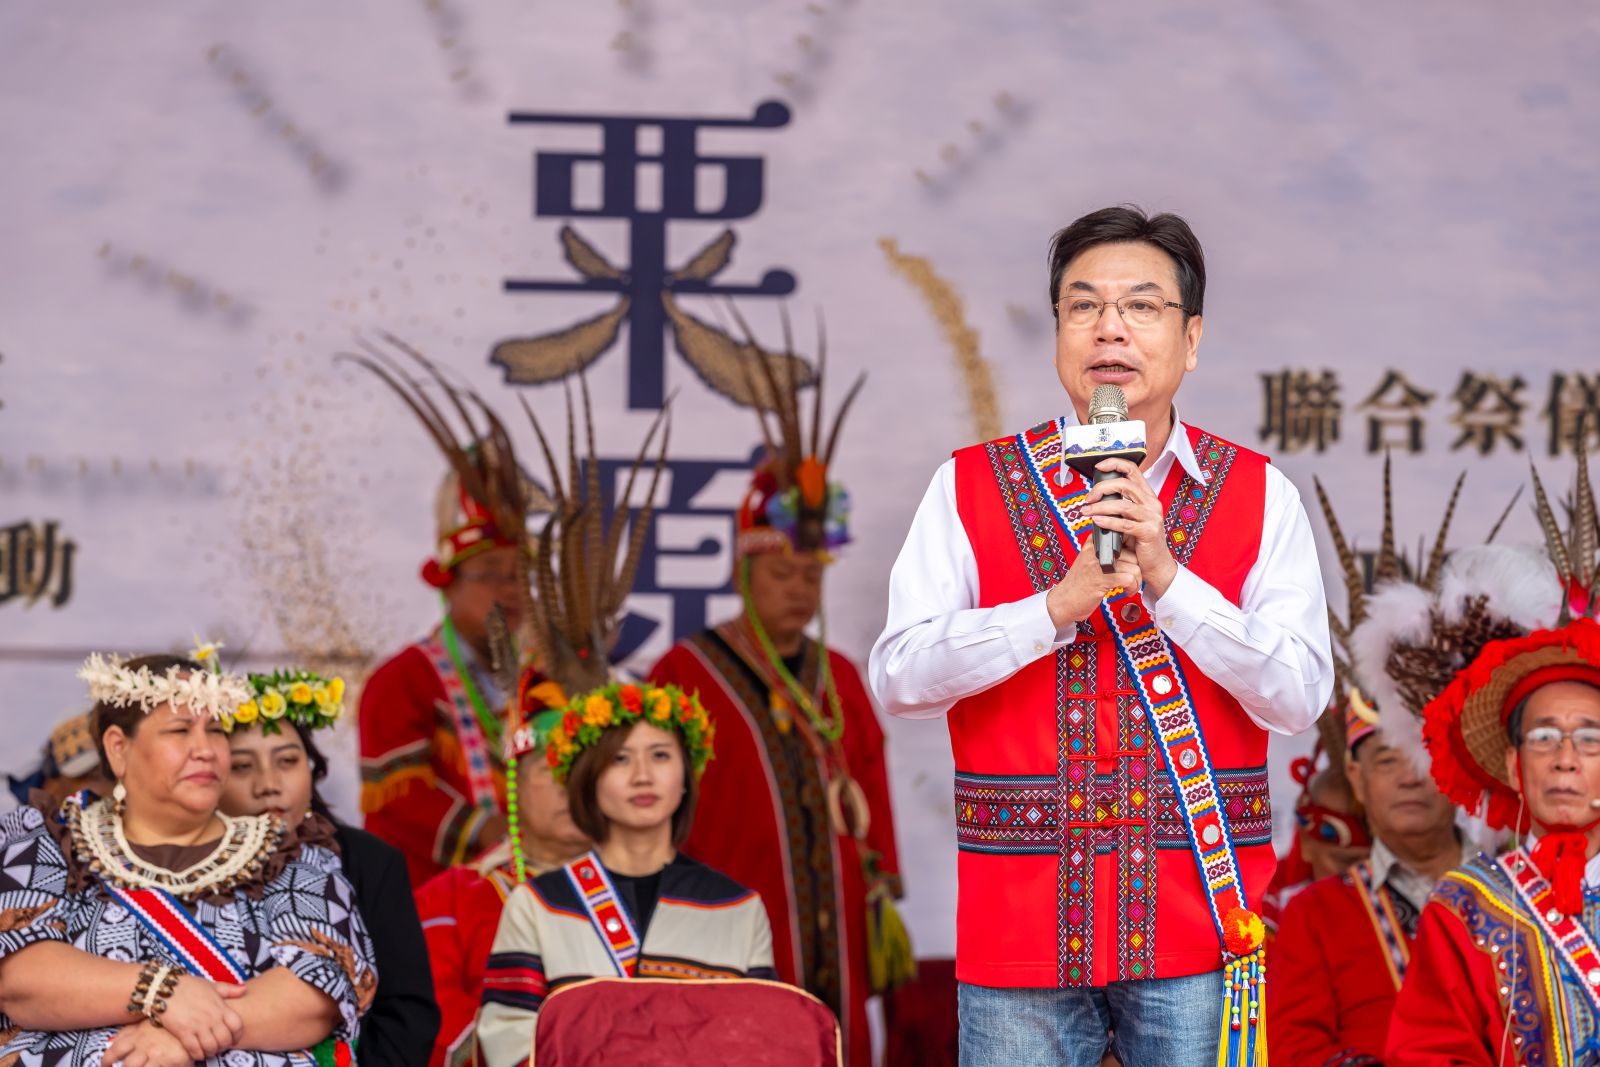 代理市長劉和然感謝族人對於文化傳承的付出，也肯定各族群領袖帶領族人在文化傳承的努力耕耘。